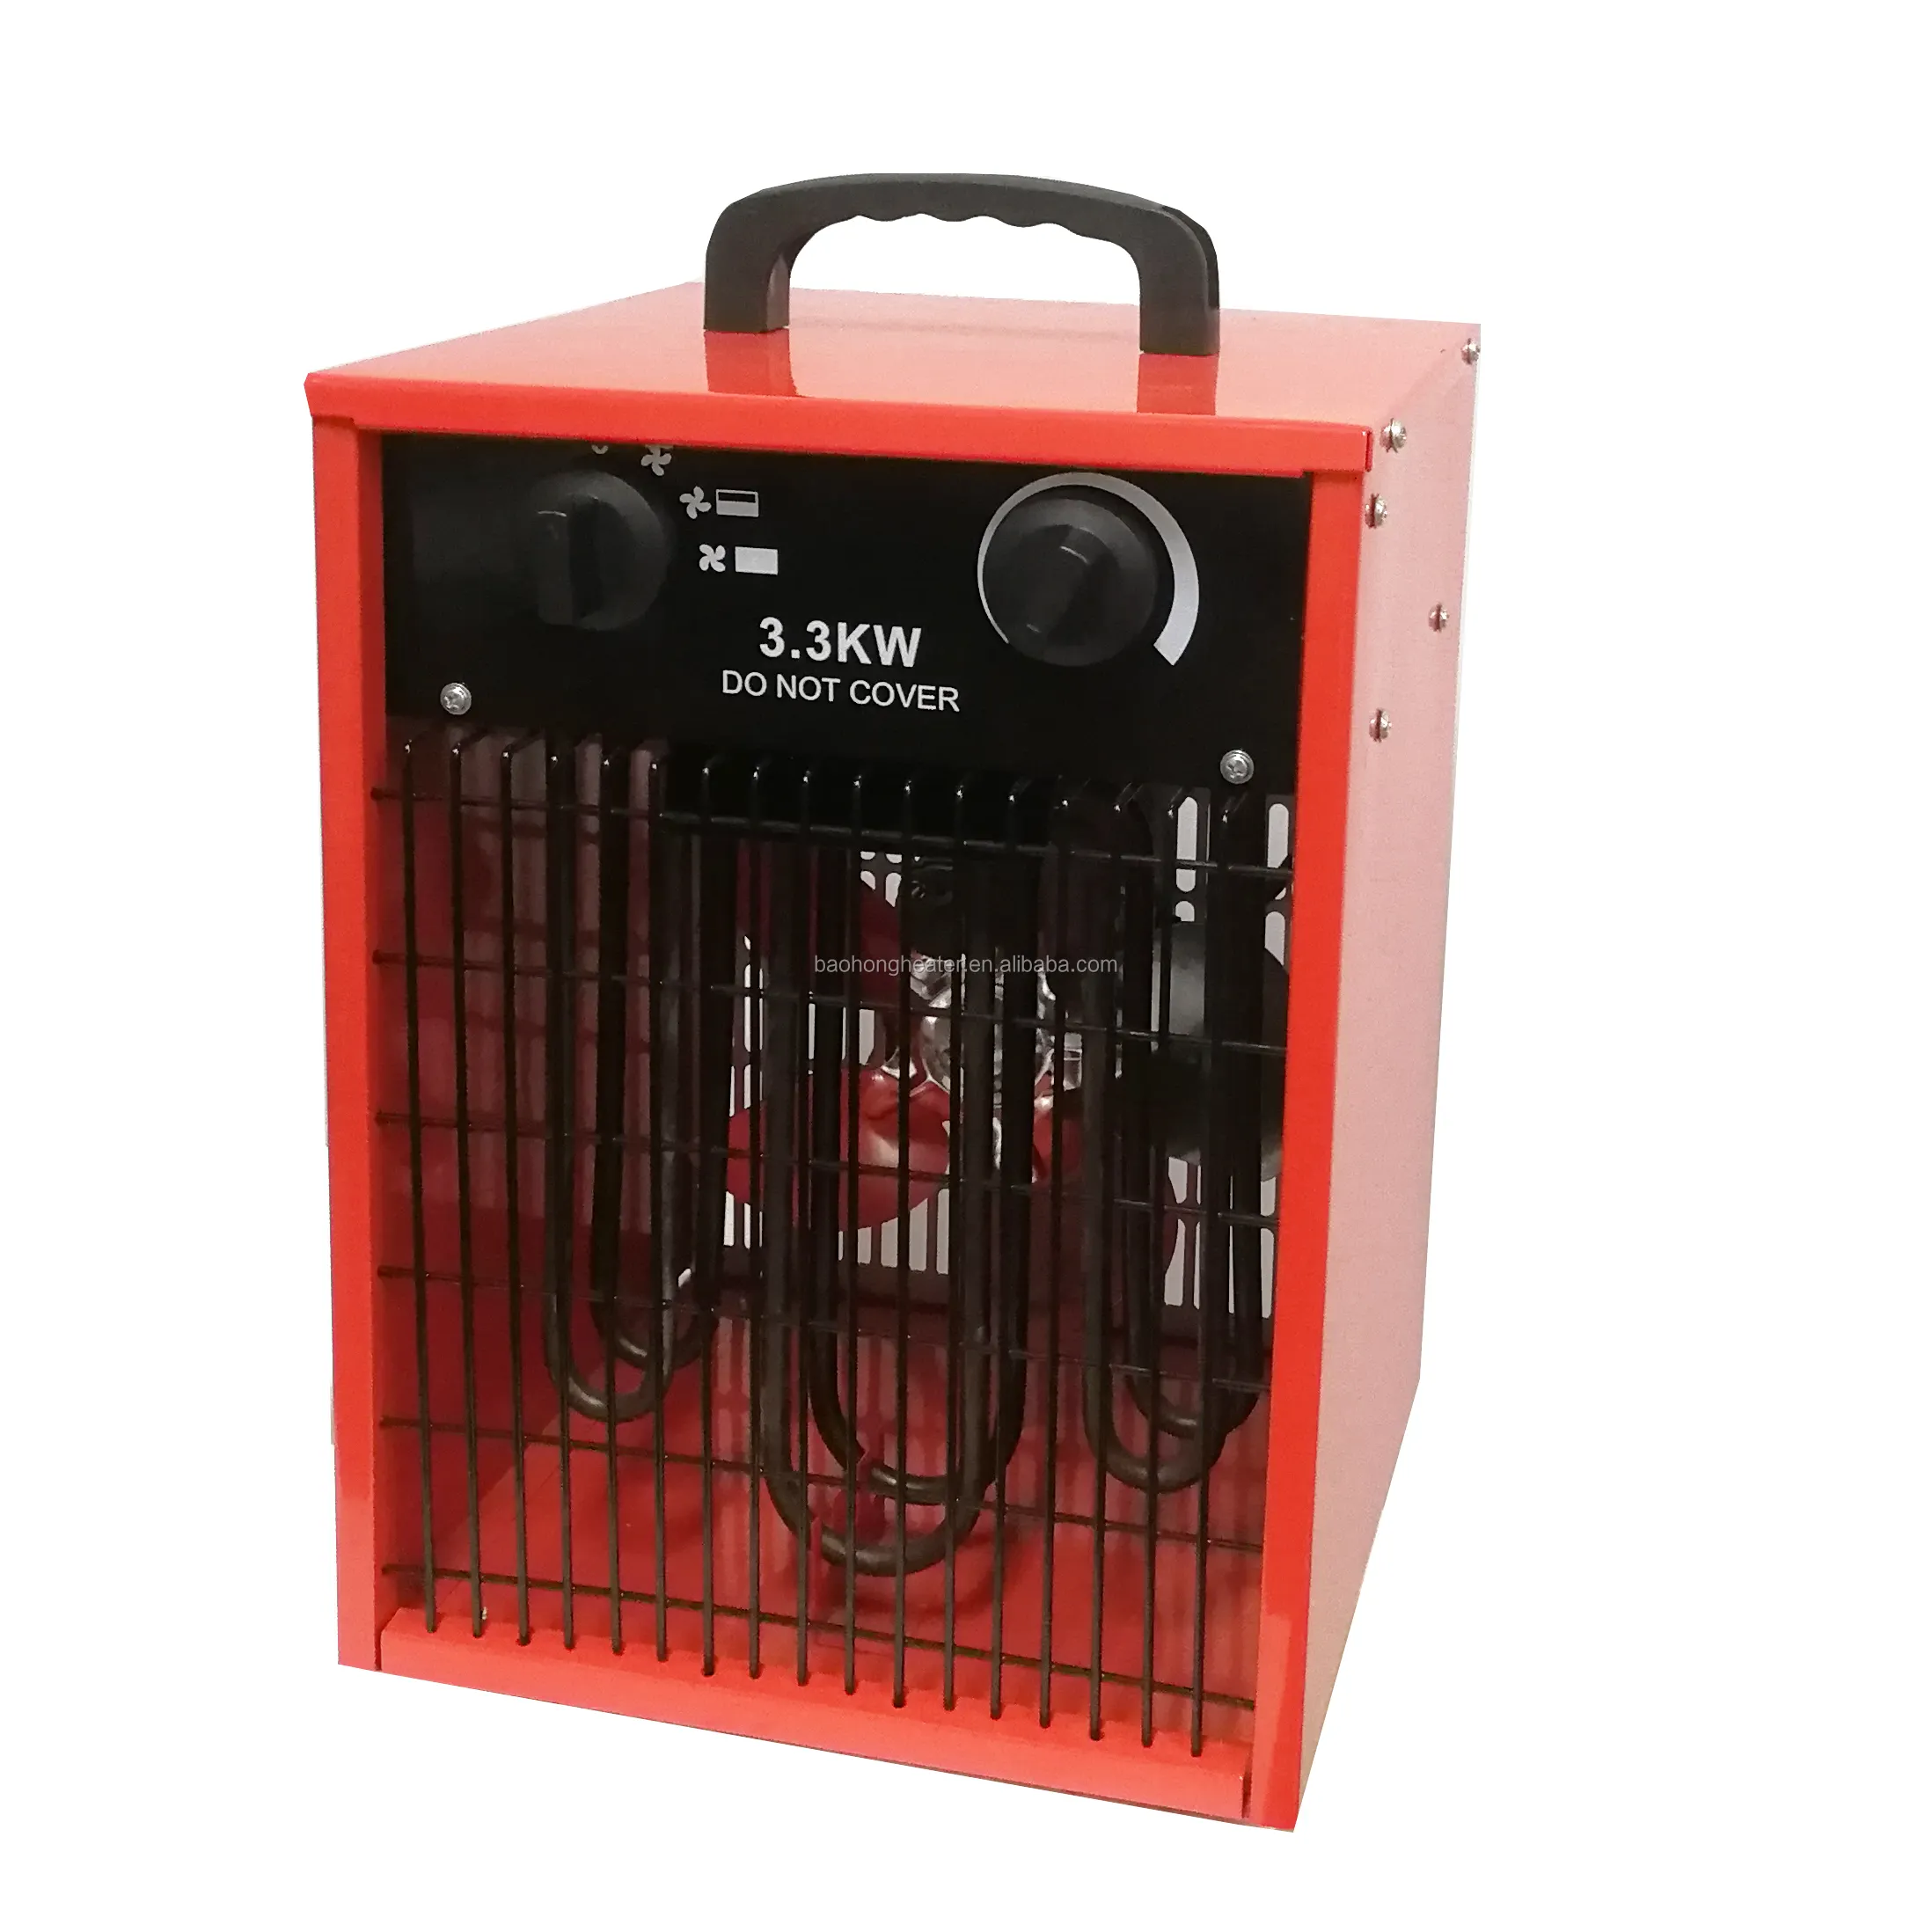 Radiateur électrique carré de haute qualité, facile à utiliser avec poignée, tuyau de chaleur en acier inoxydable, 3.3 kW